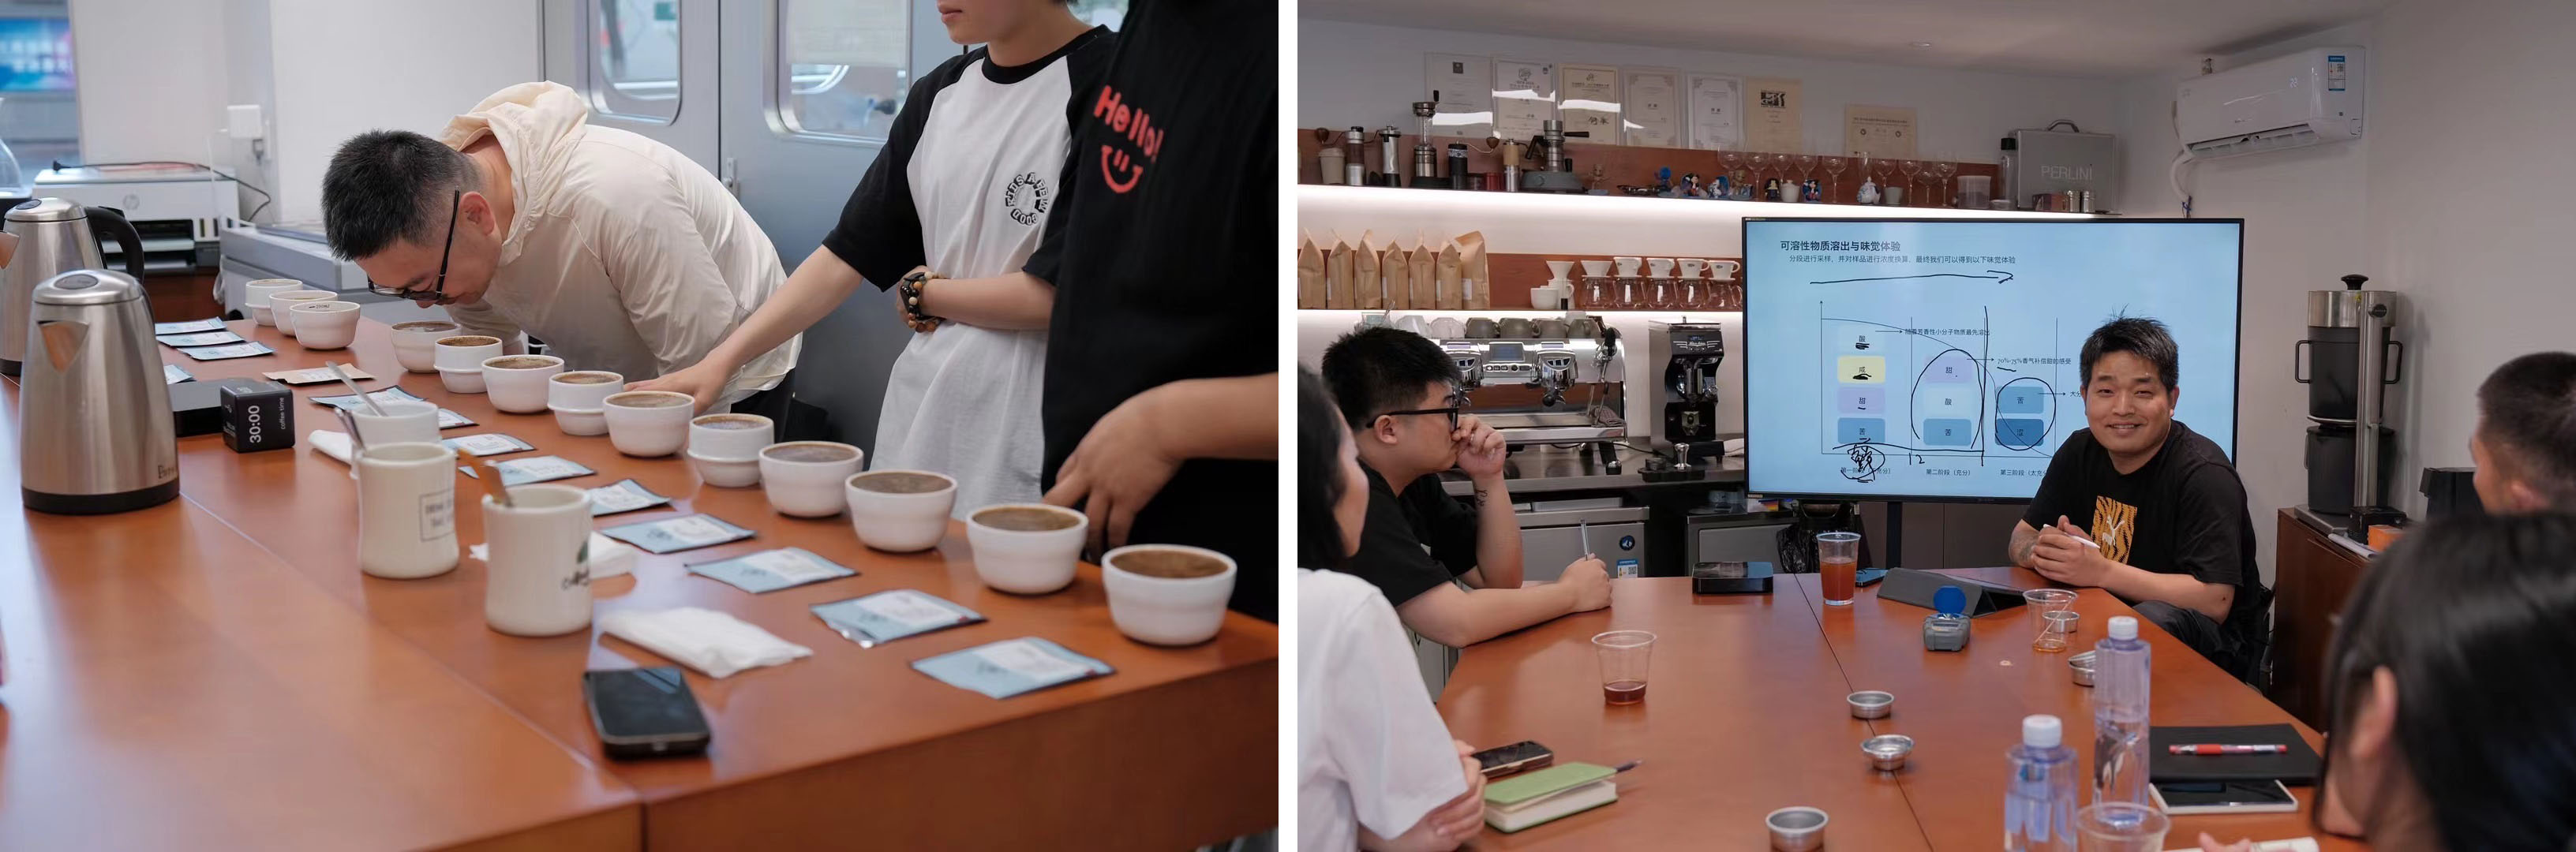 咖啡店設計,咖啡店設計案例,咖啡店設計方案,咖啡店裝修,創意咖啡店,咖啡培訓,咖啡教師,杭州,Uncle Shu Coffee,現象設計